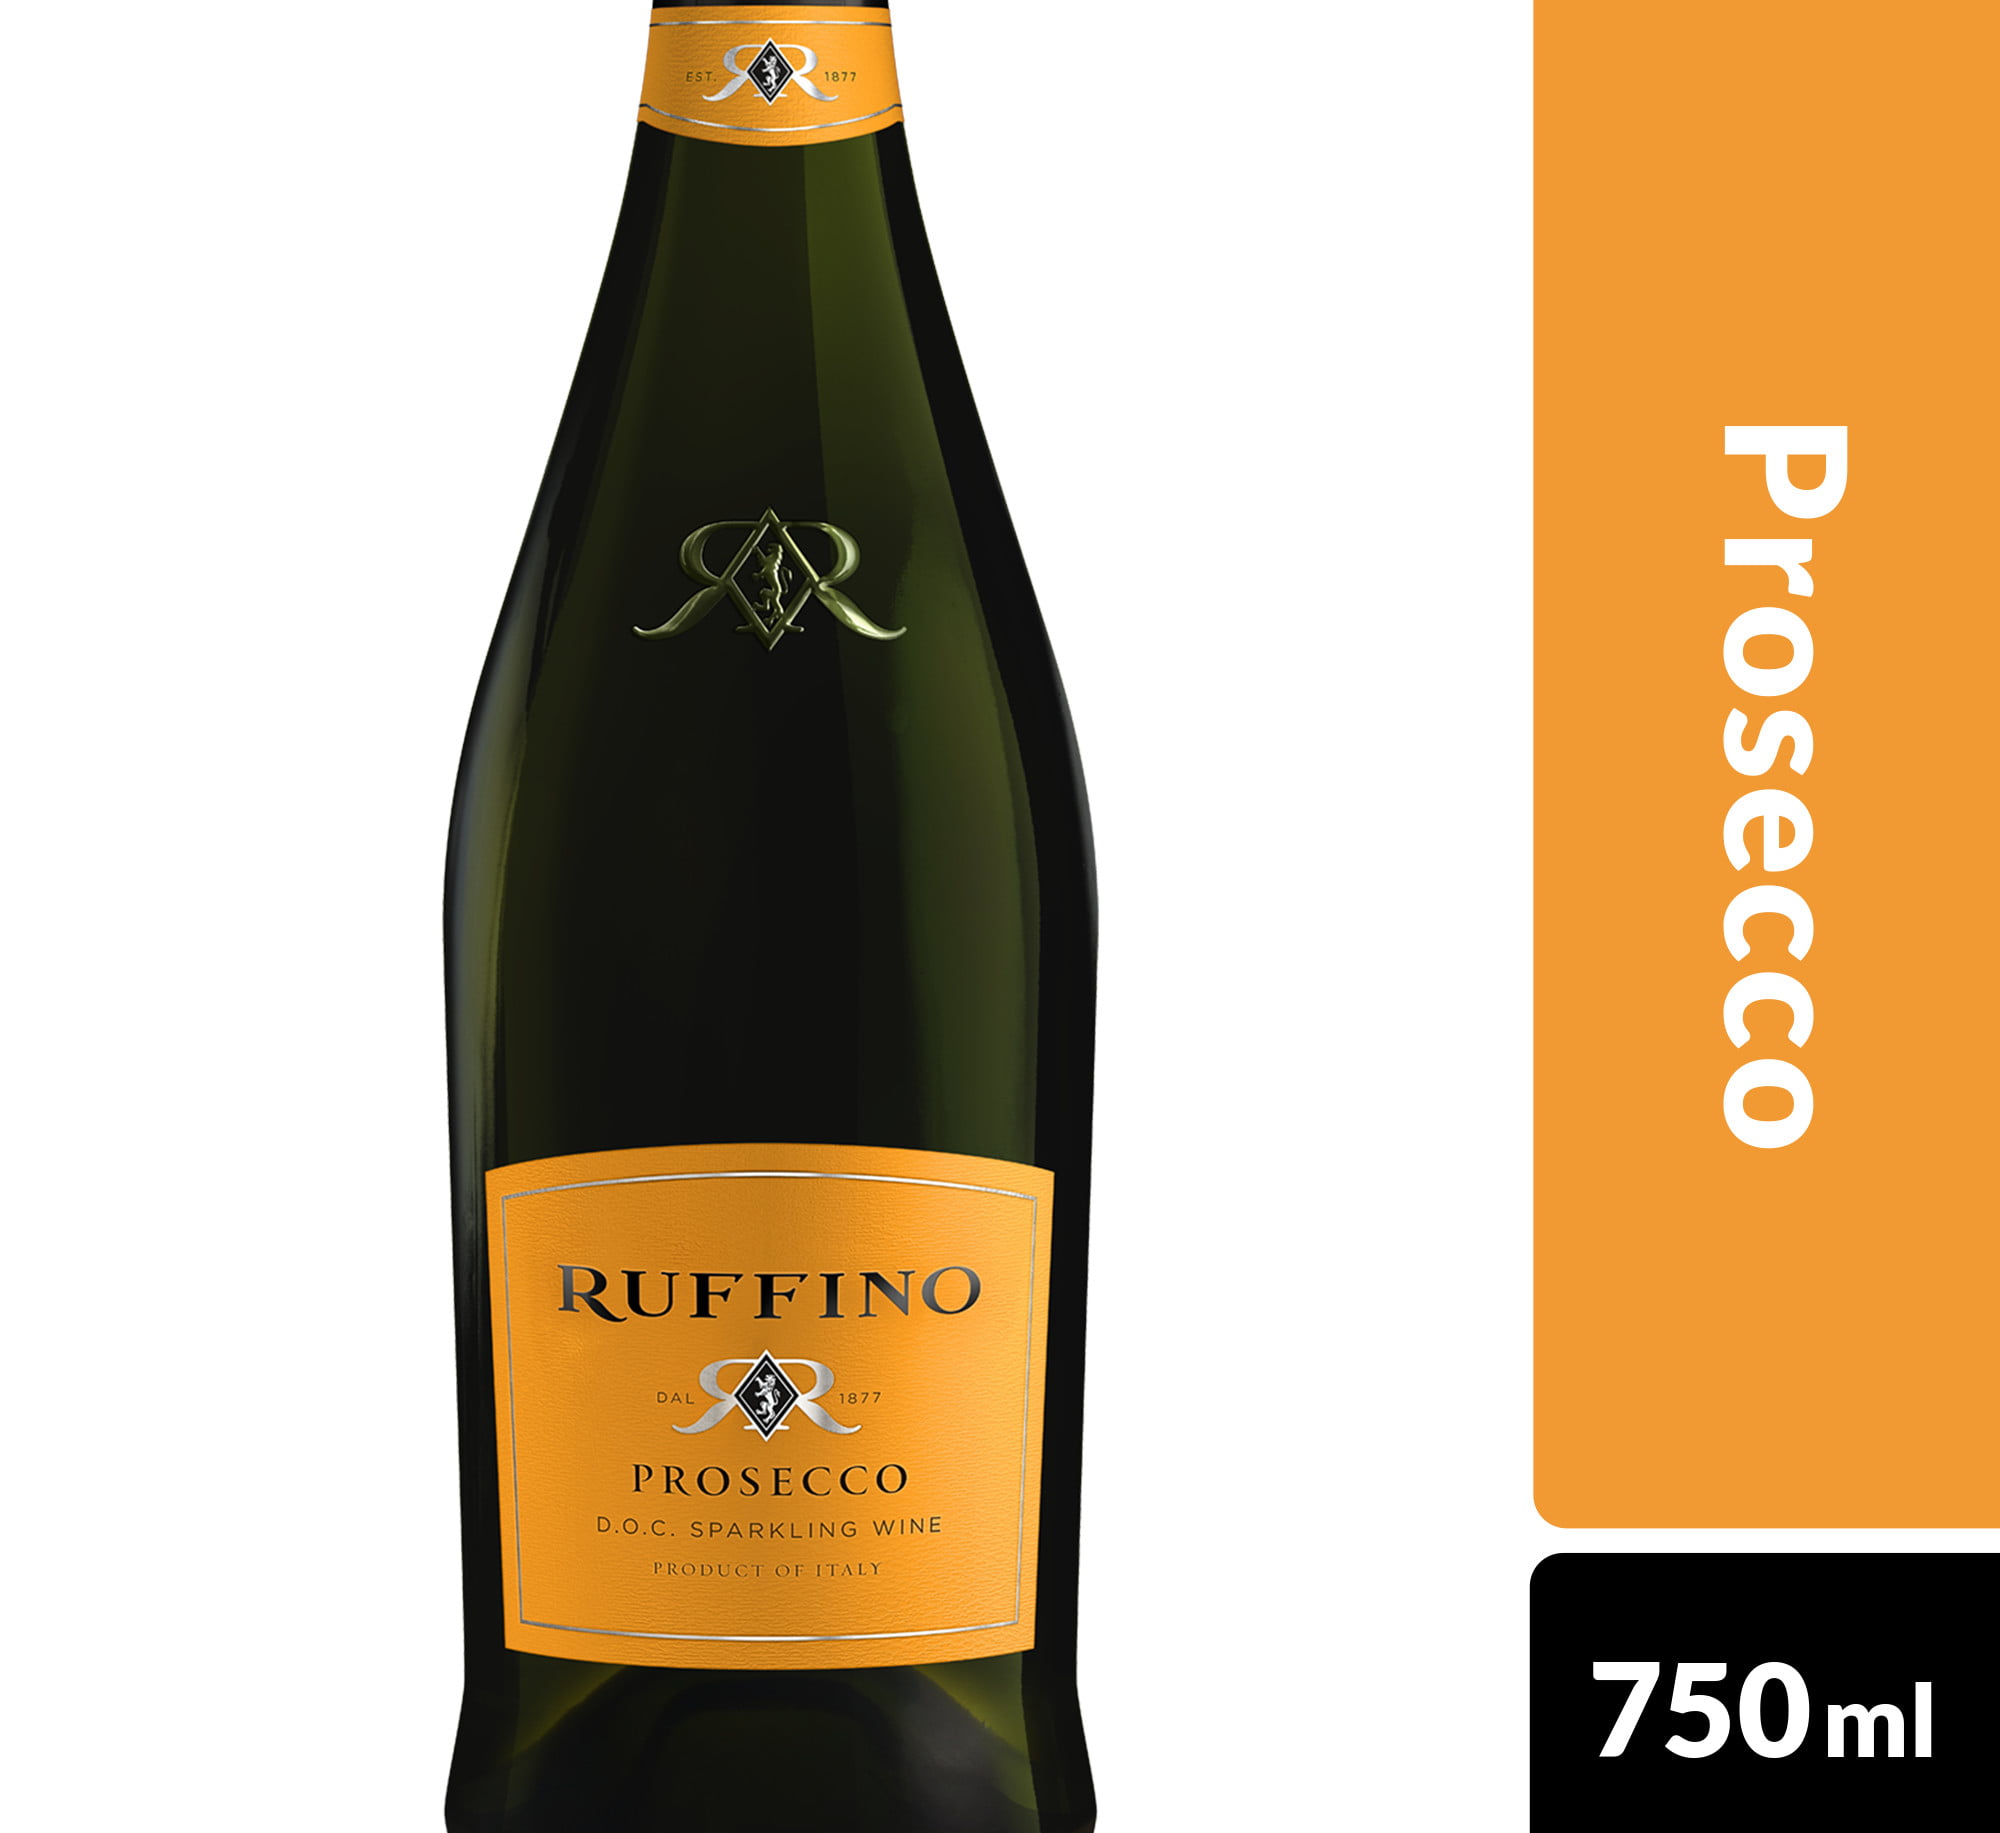 ruffino-prosecco-doc-prosecco-italian-sparkling-wine-750-ml-bottle